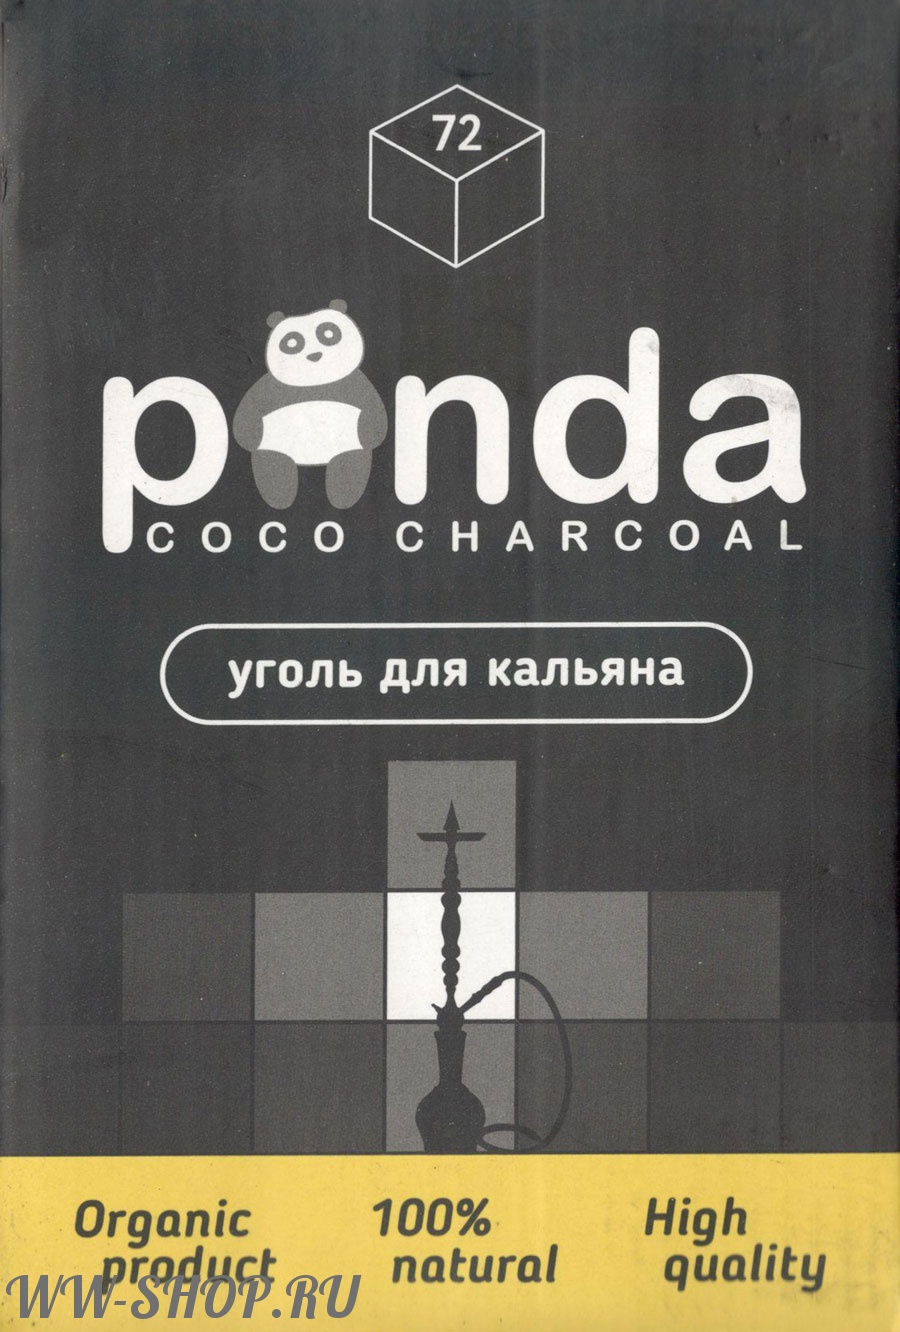 уголь кокосовый panda черная xl 72 (панда) Волгоград